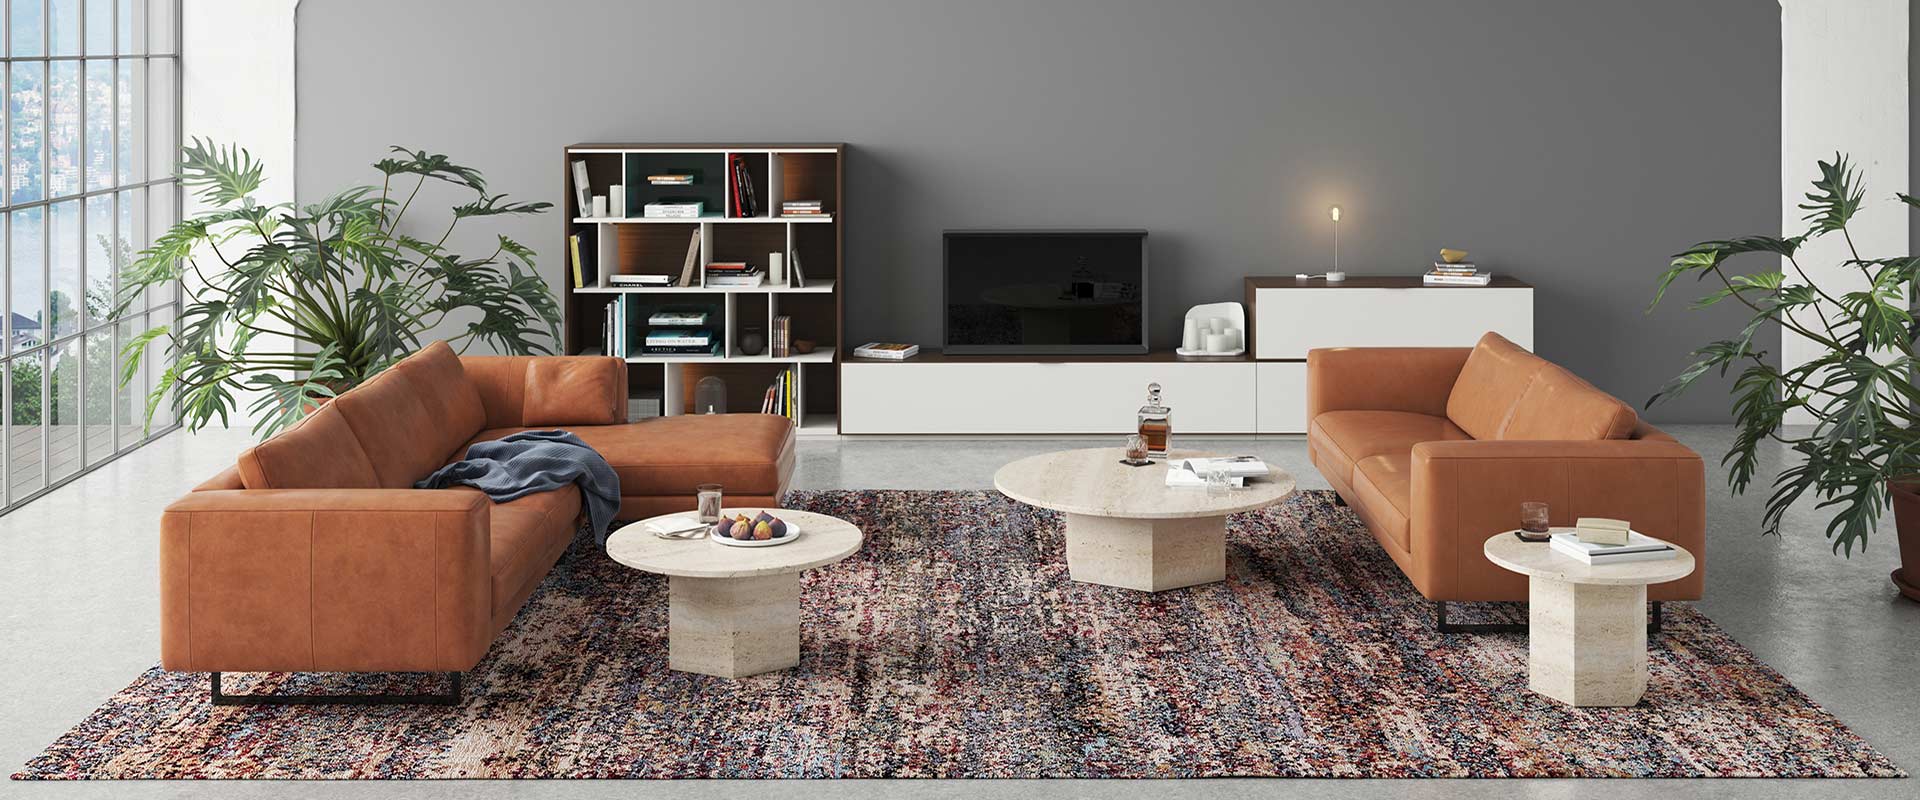 Modernes Wohnzimmer mit großem Fenster, zwei cognacfarbenen Ledersofas, zwei runden Marmortischen und einem Bücherregal. Dekorative Pflanzen und ein gemusterter Teppich ergänzen den Raum.